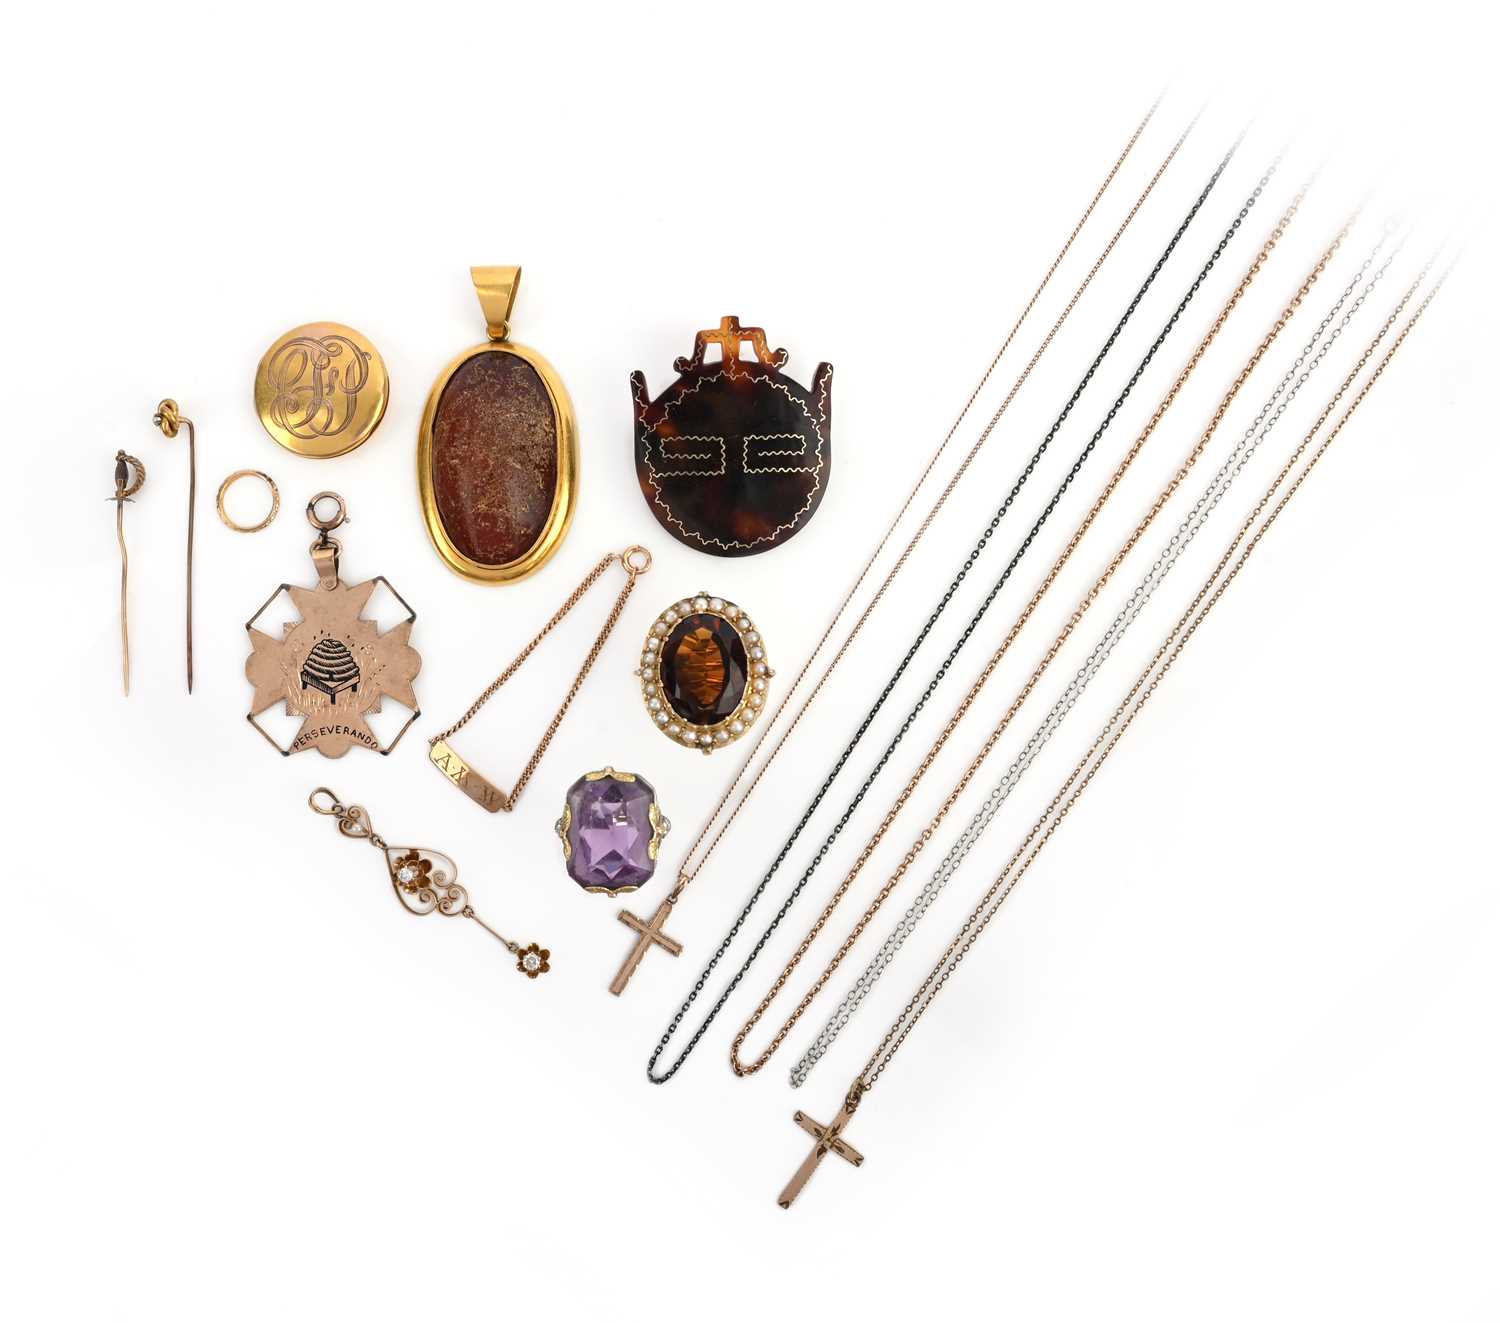 λ A collection of jewellery, comprising: an amber pendant mounted in gold, length 6.4cm; a